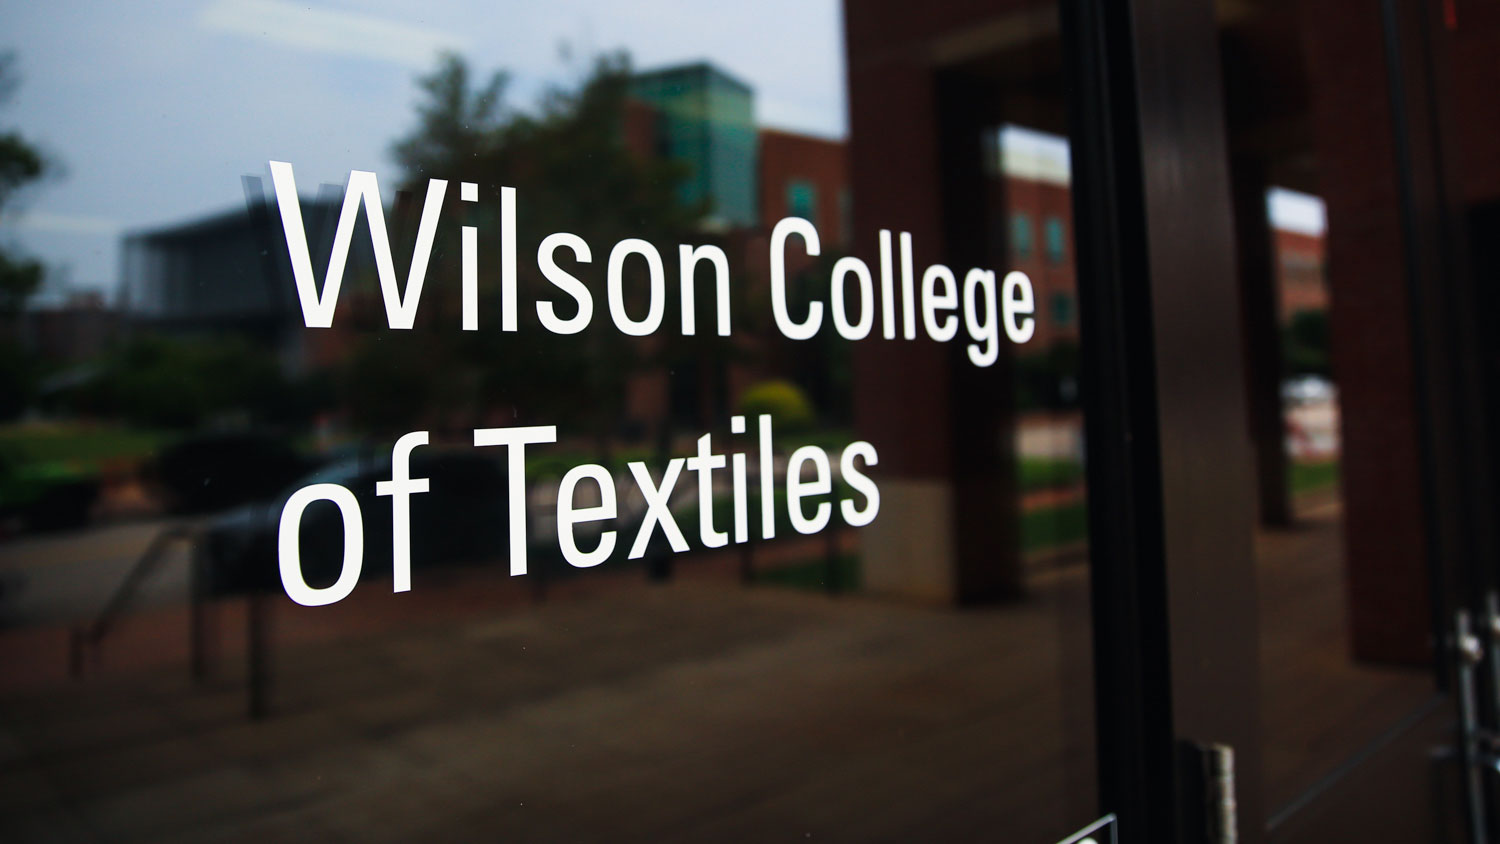 Wilson College of Textiles door label